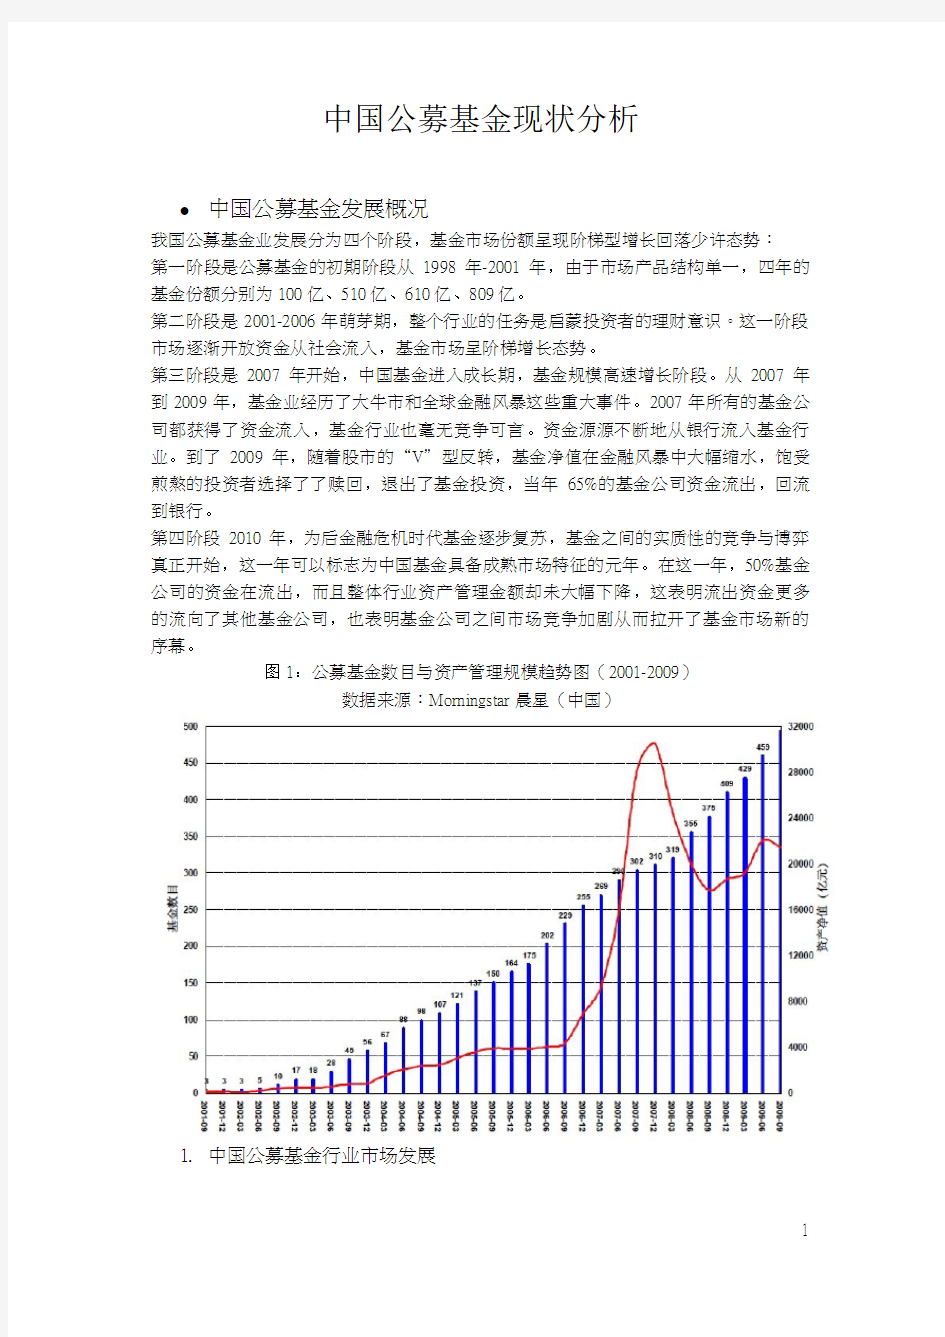 中国公募基金的现状分析